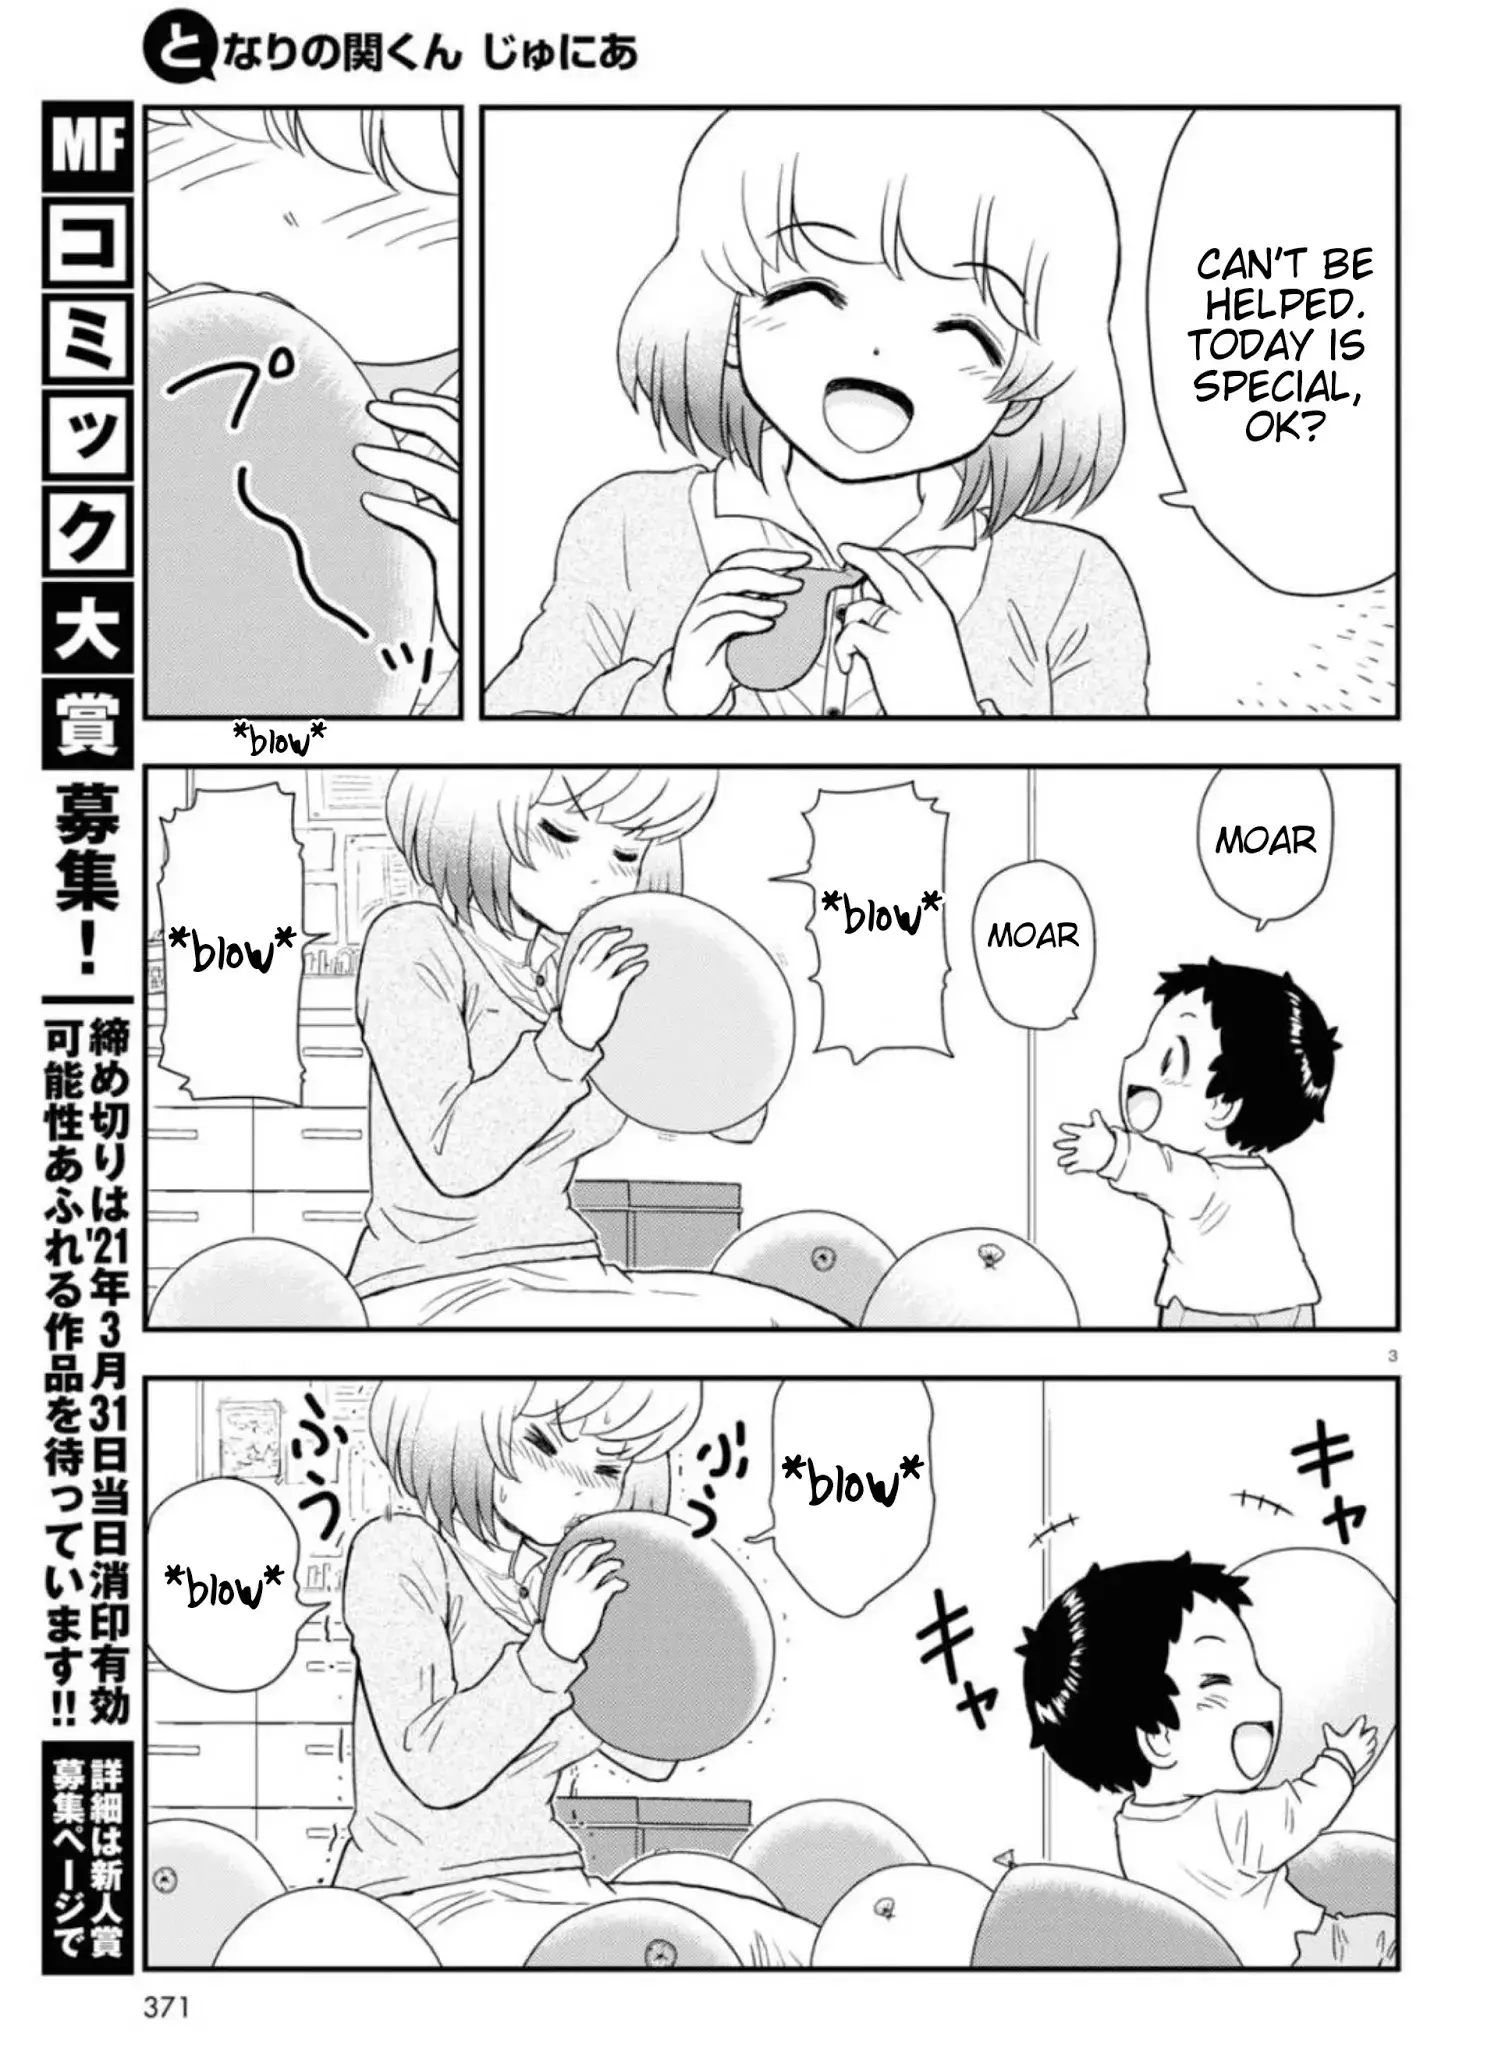 Tonari No Seki-Kun Junior - 6 page 4